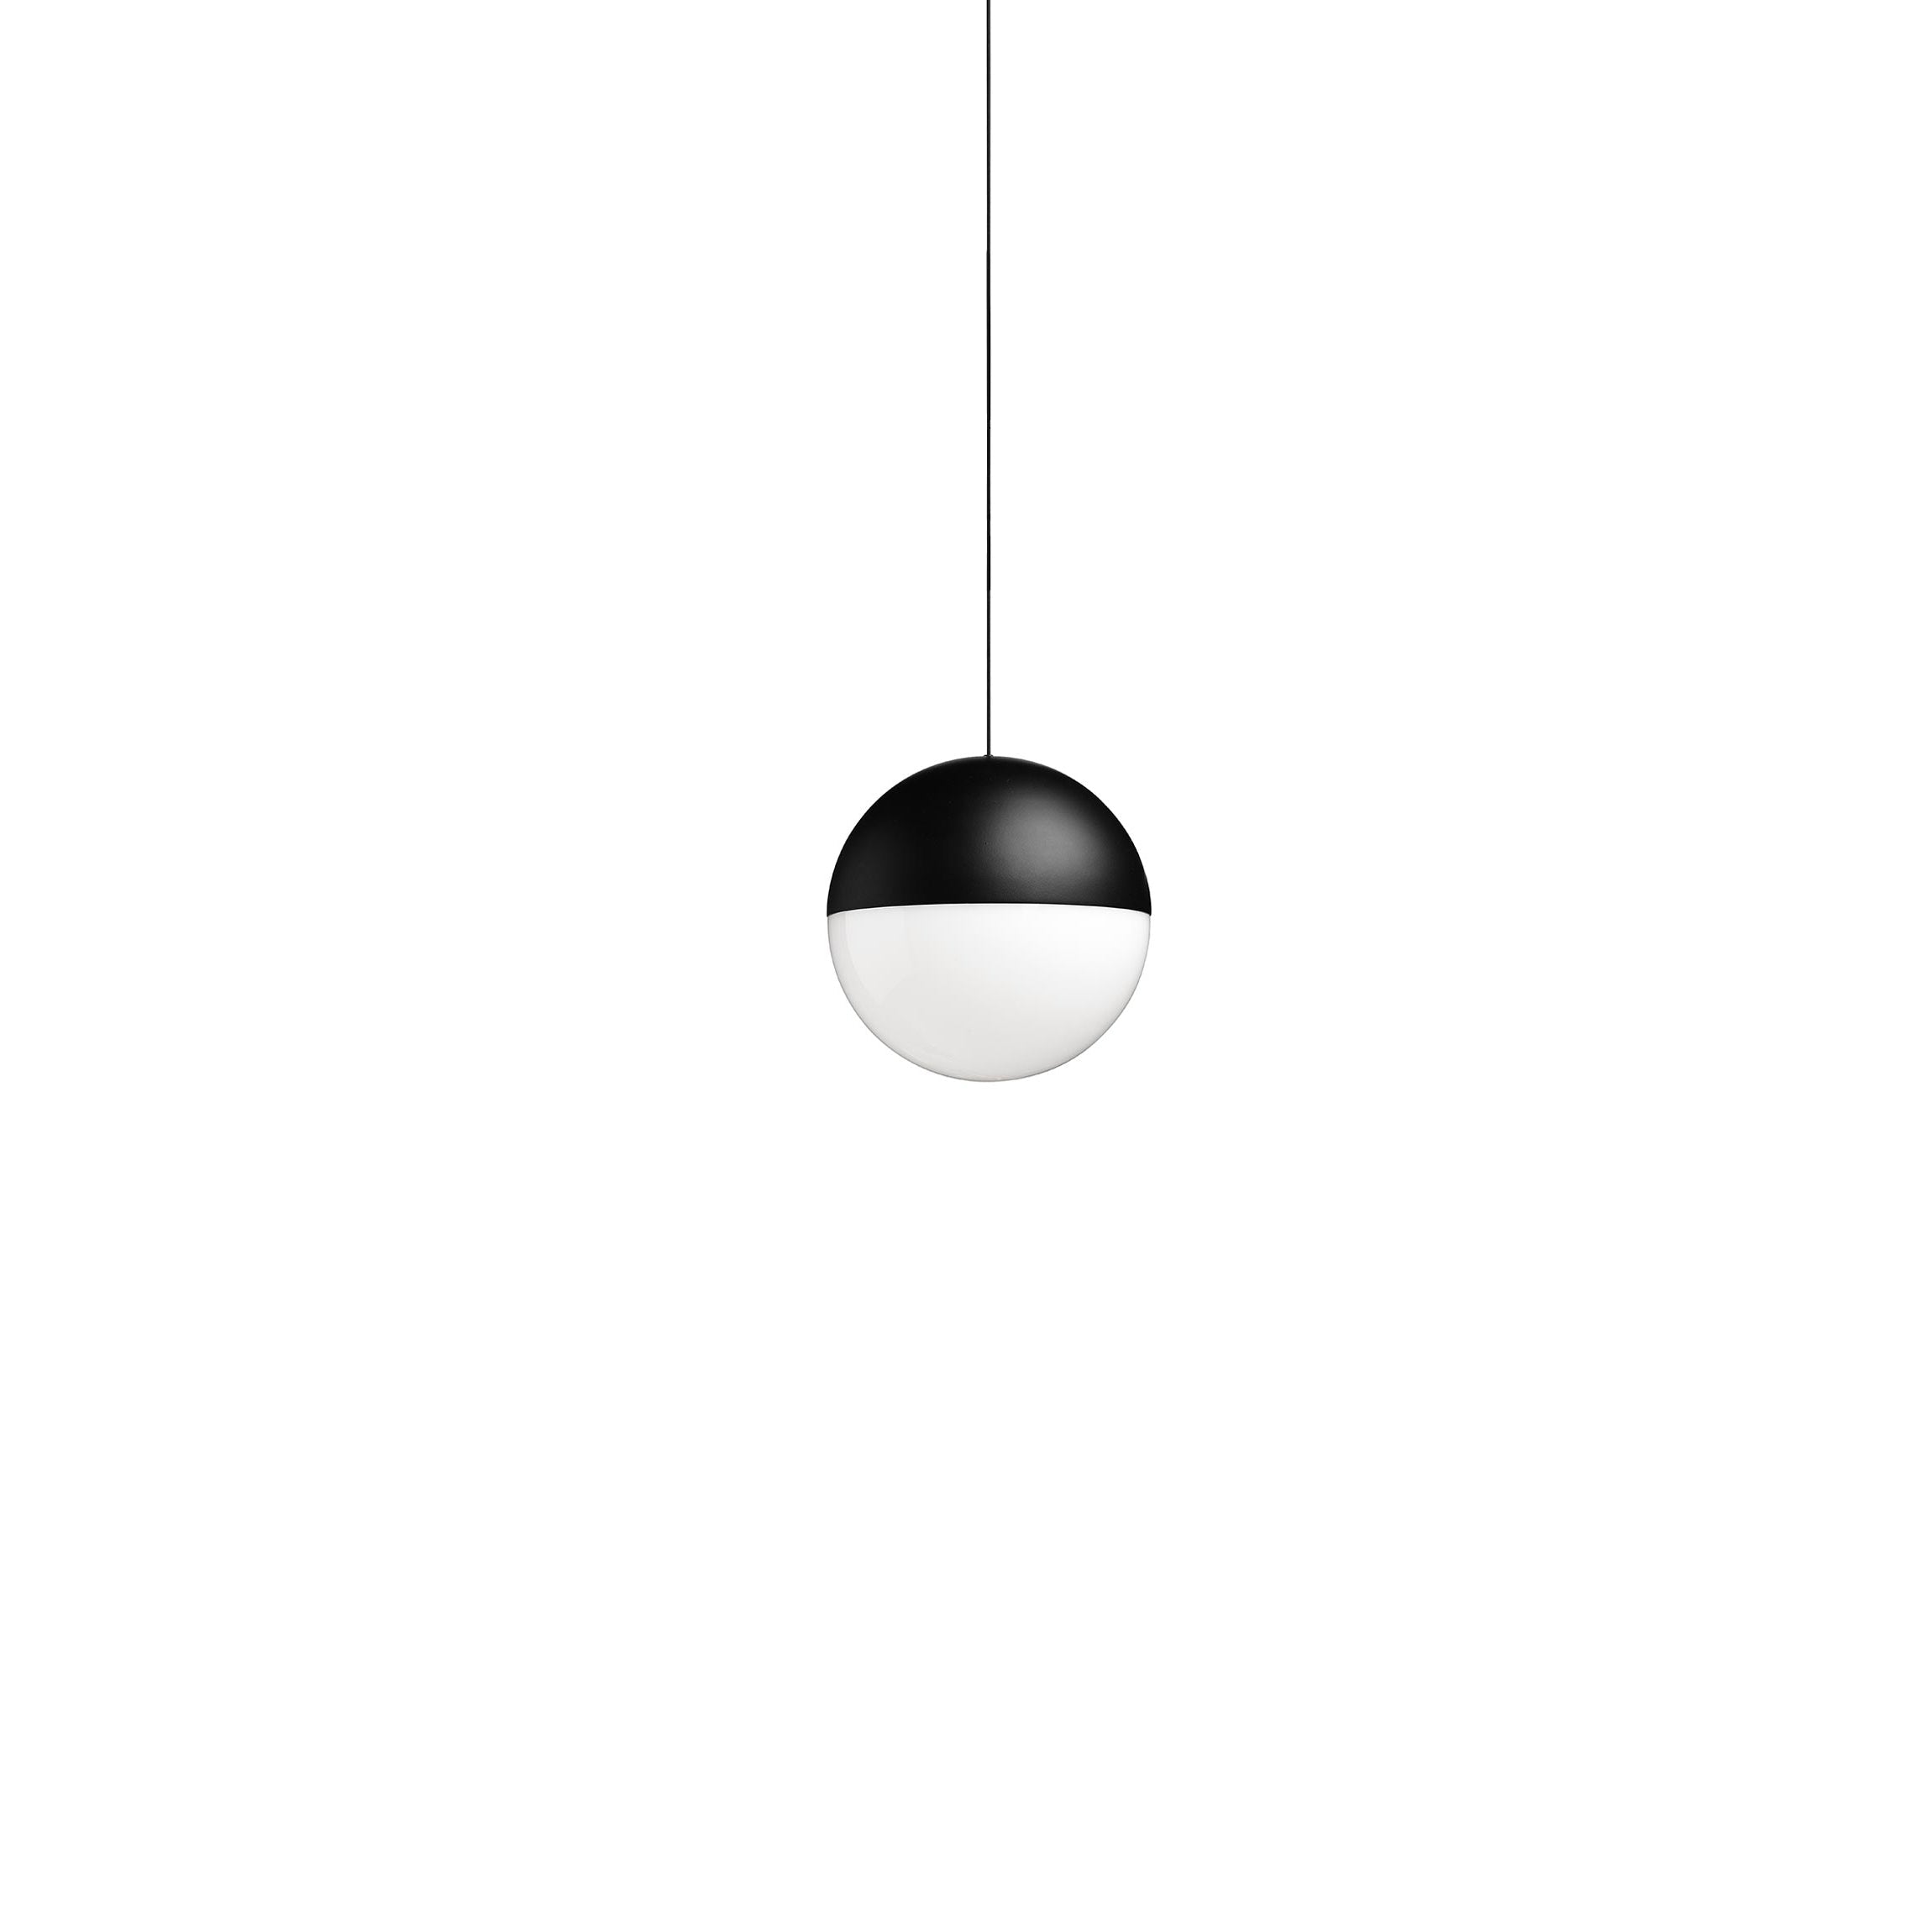 Flos String Light Sfall Testa a sospensione Lampada 22m Black con app Casambi